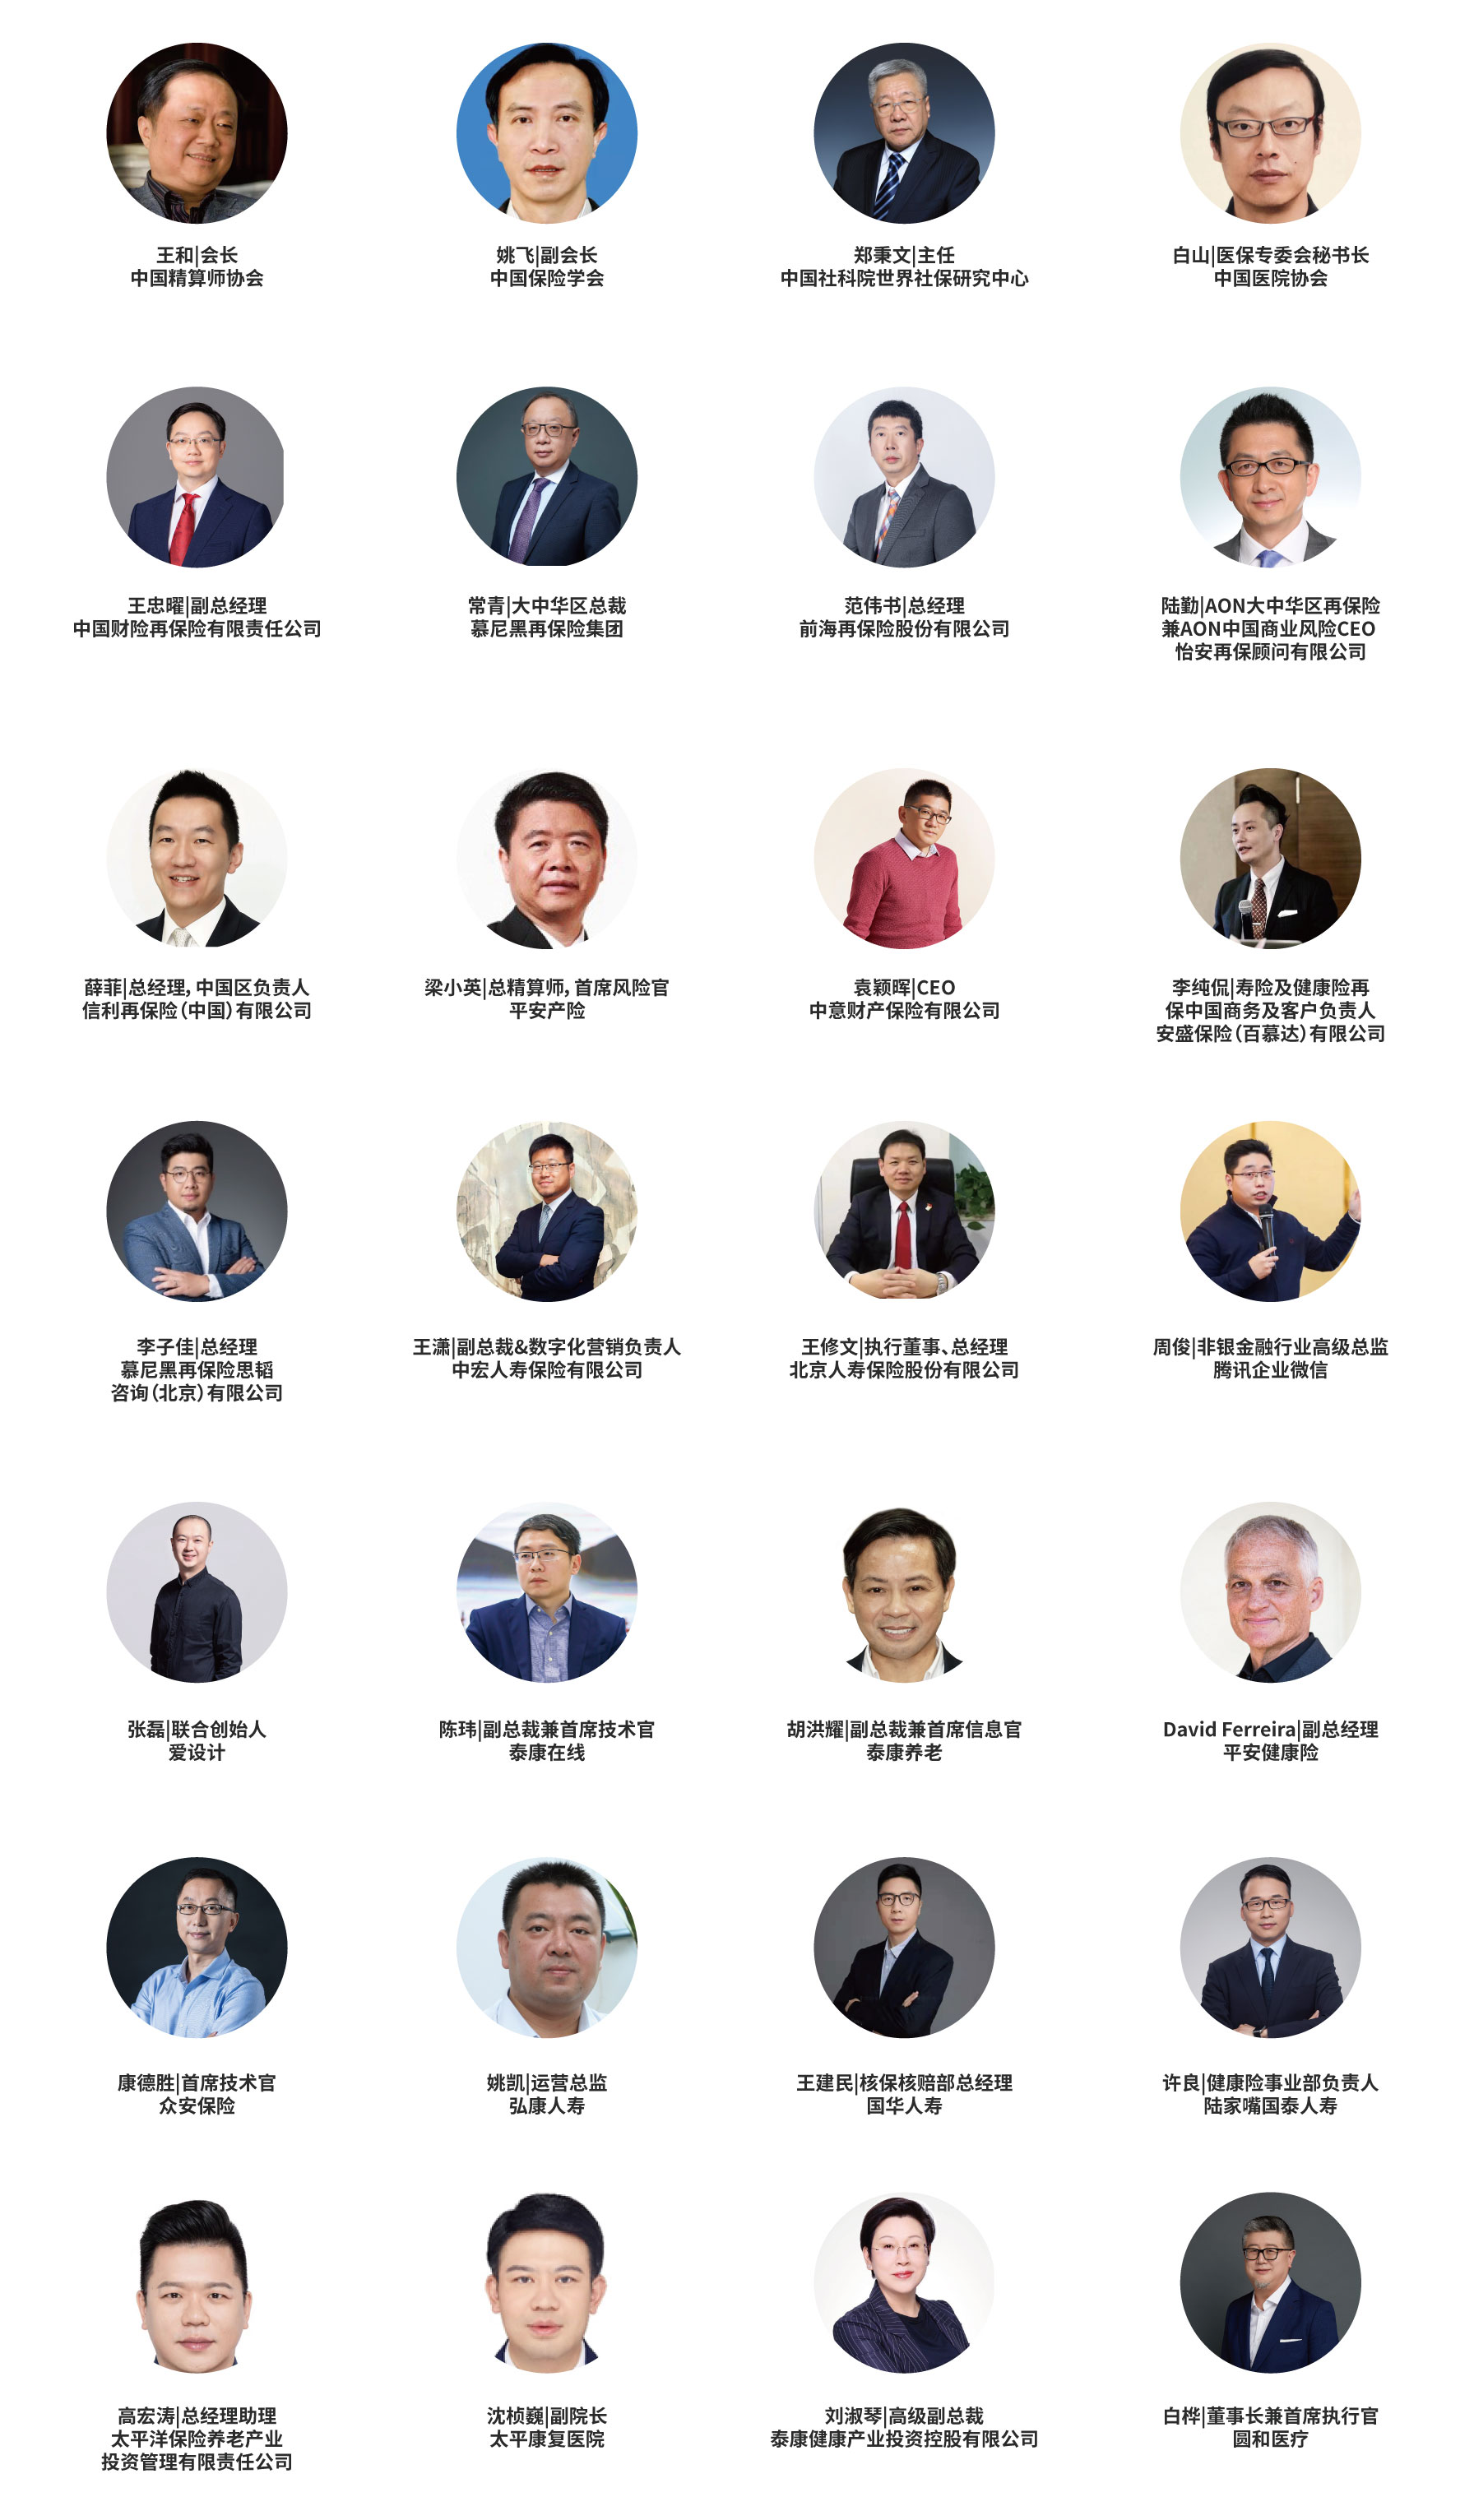 2022（第十屆）中國保險產業國際峰會